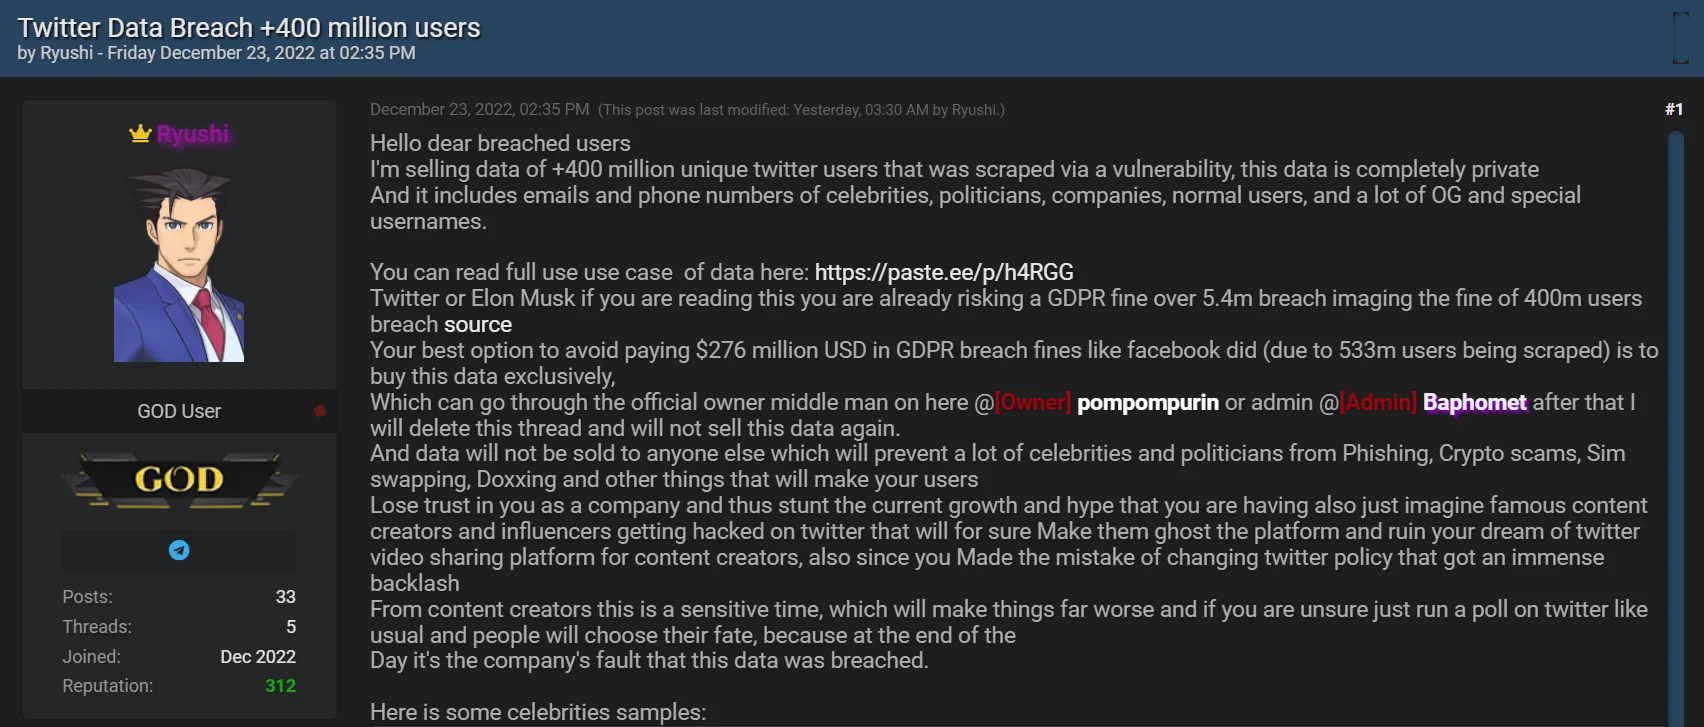 Хакер украл данные 400 млн аккаунтов Twitter и просит выкуп у Илона Маска - фото 1